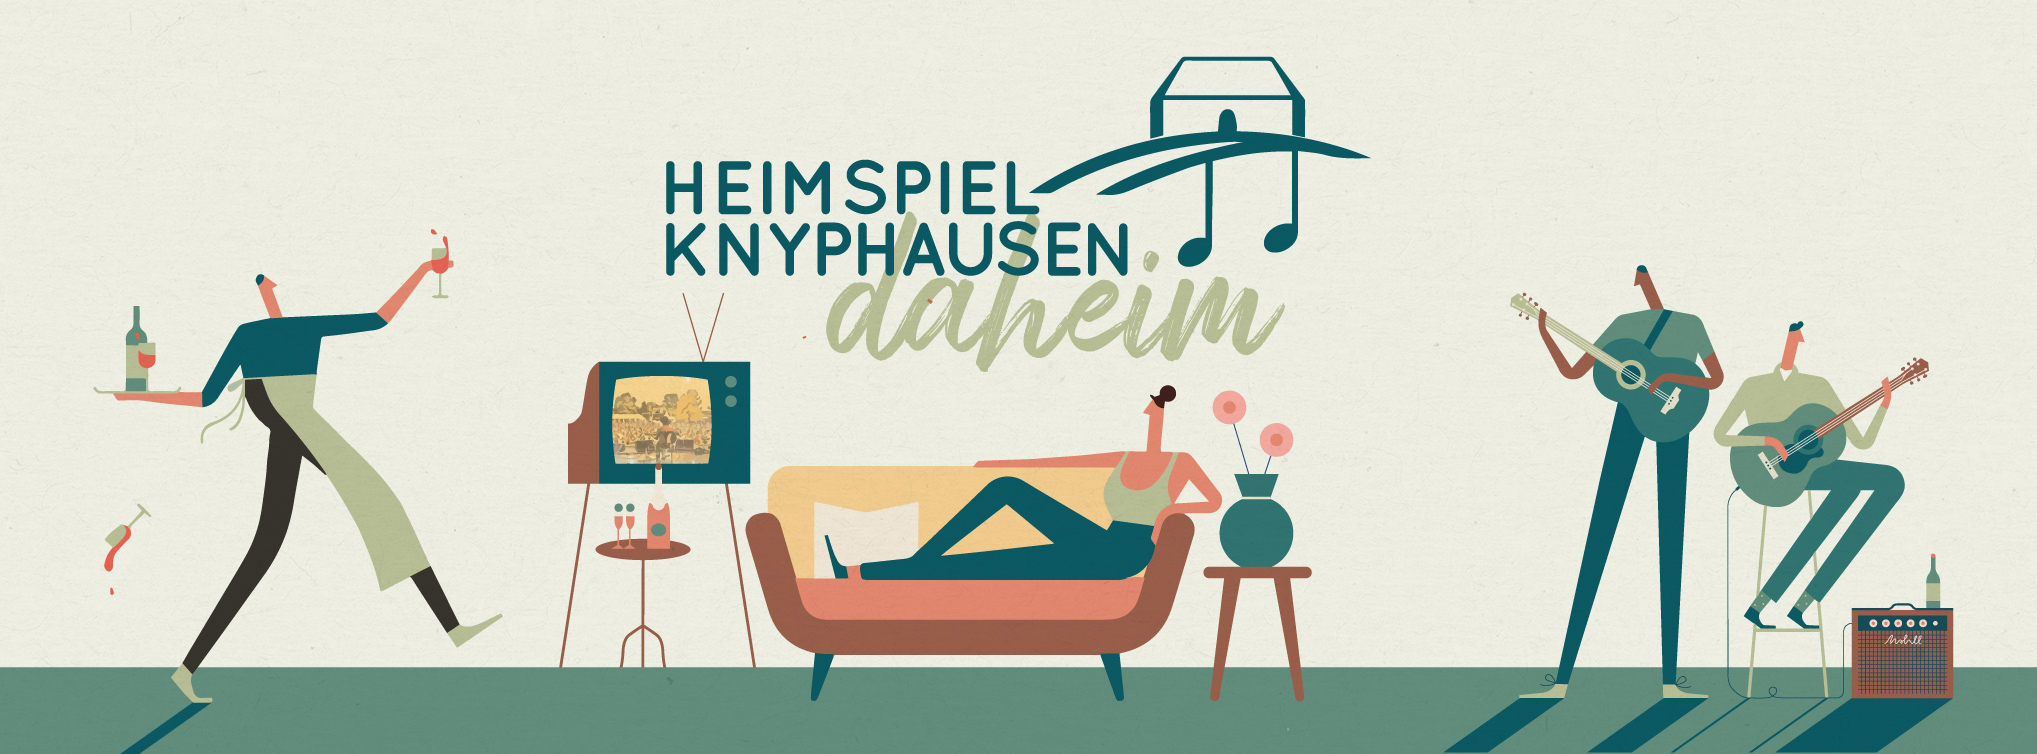 HEIMSPIEL KNYPHAUSEN – Daheimspiel 2.0.2.0